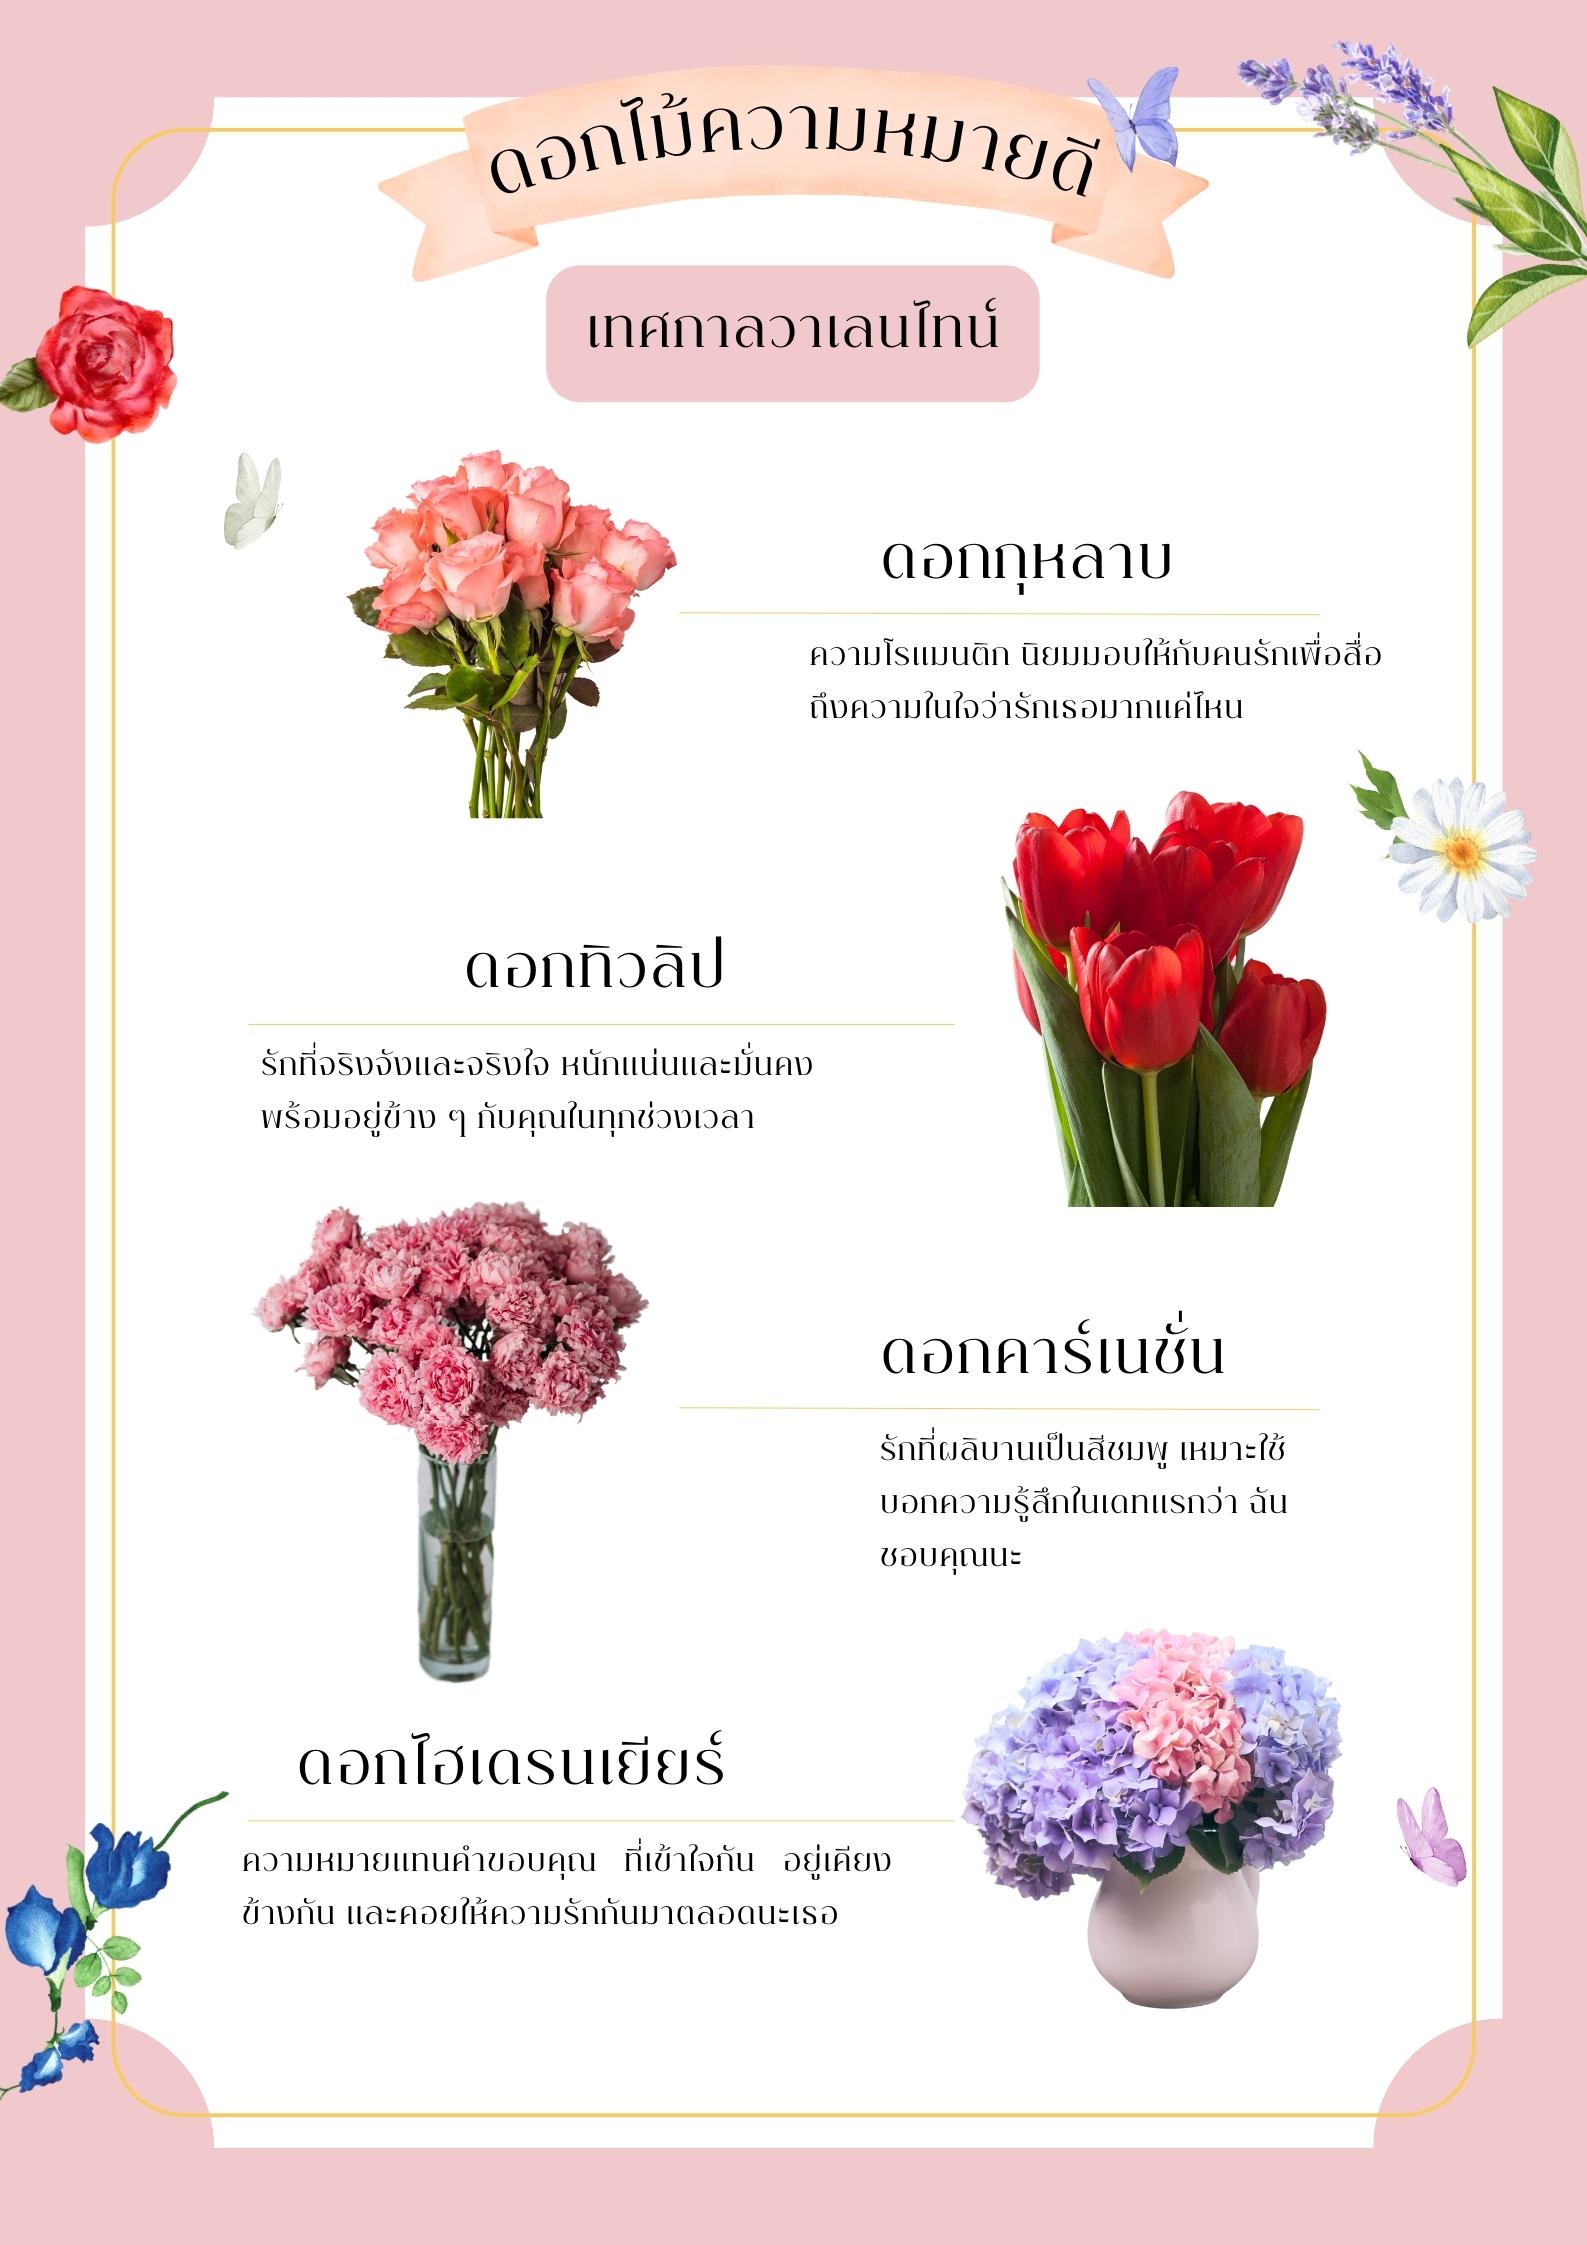 ดอกไม้ความหมายดี